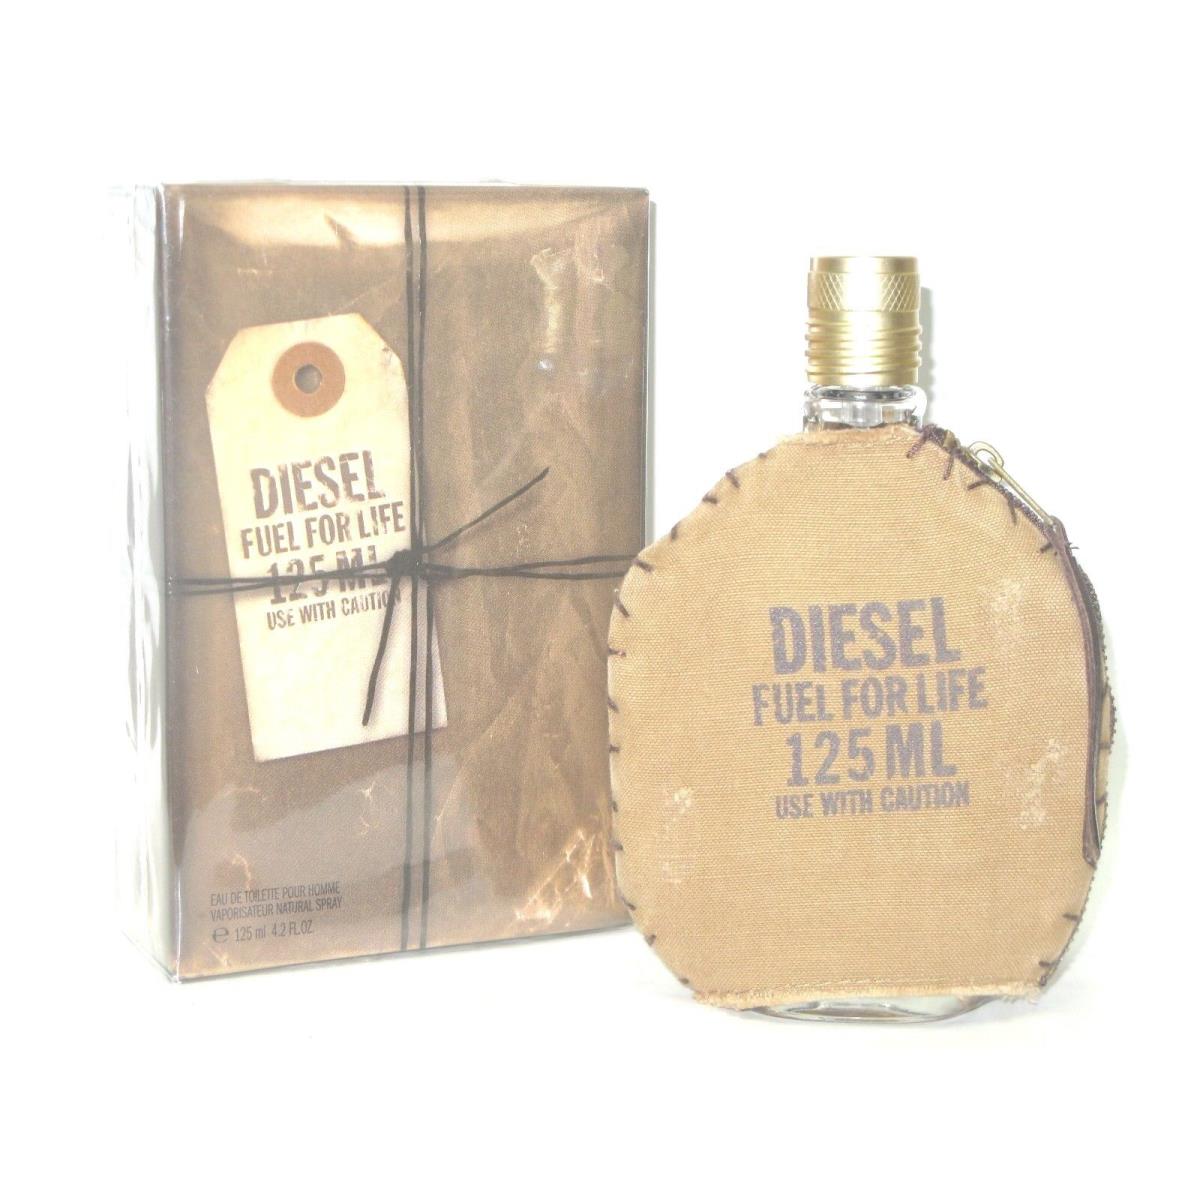 Diesel Fuel For Life Cologne For Men 4.2 oz / 125ml Eau De Toilette Spray